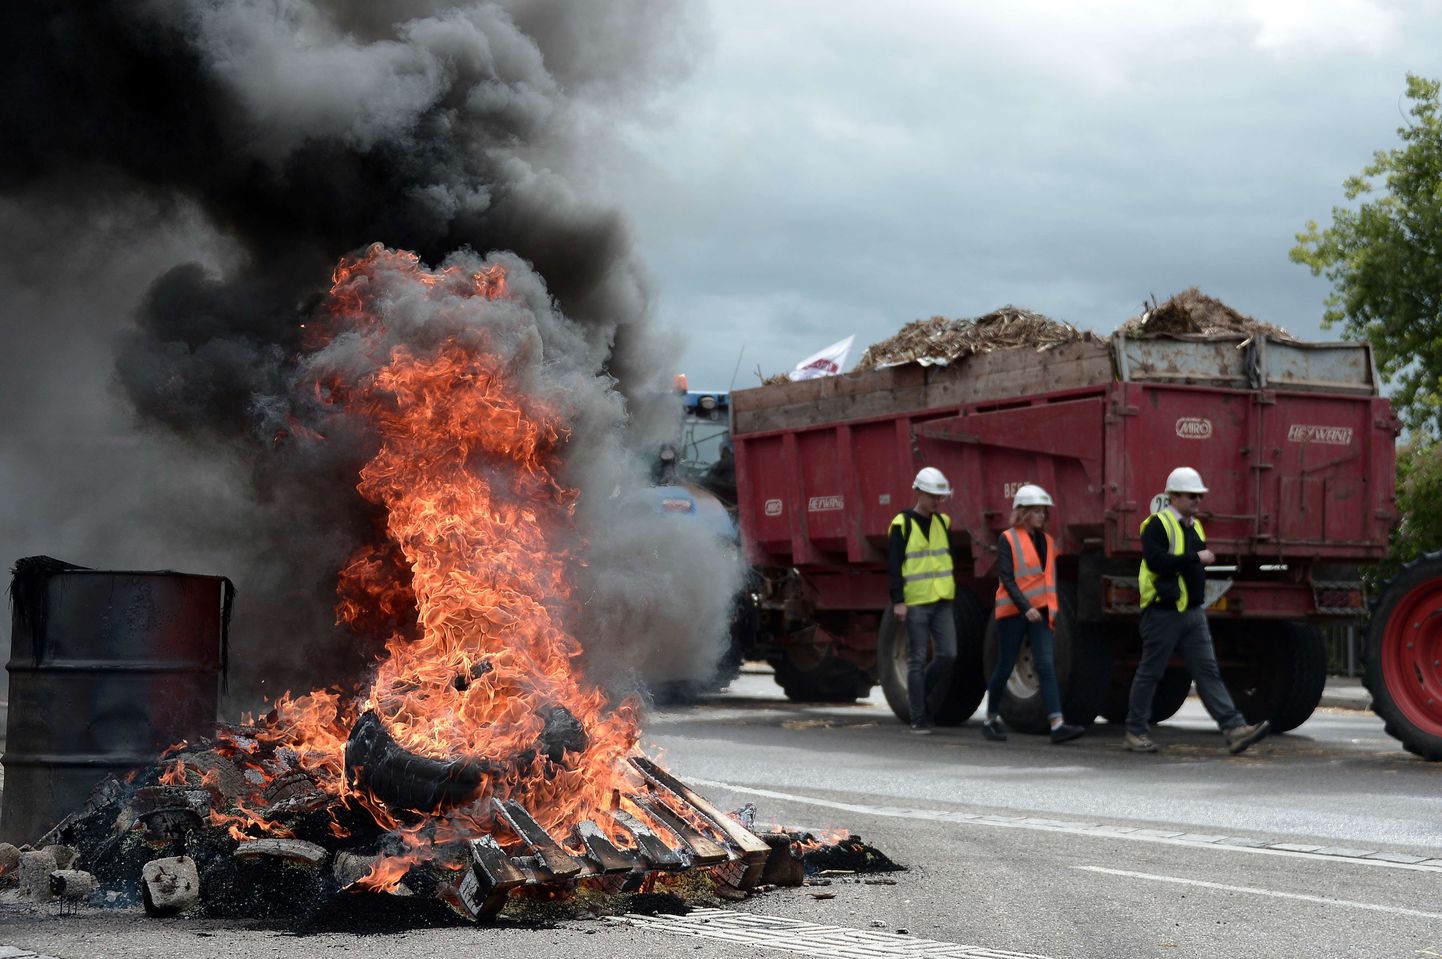 Prantsuse põllumehed põletavad protestide käigus ka kumme.